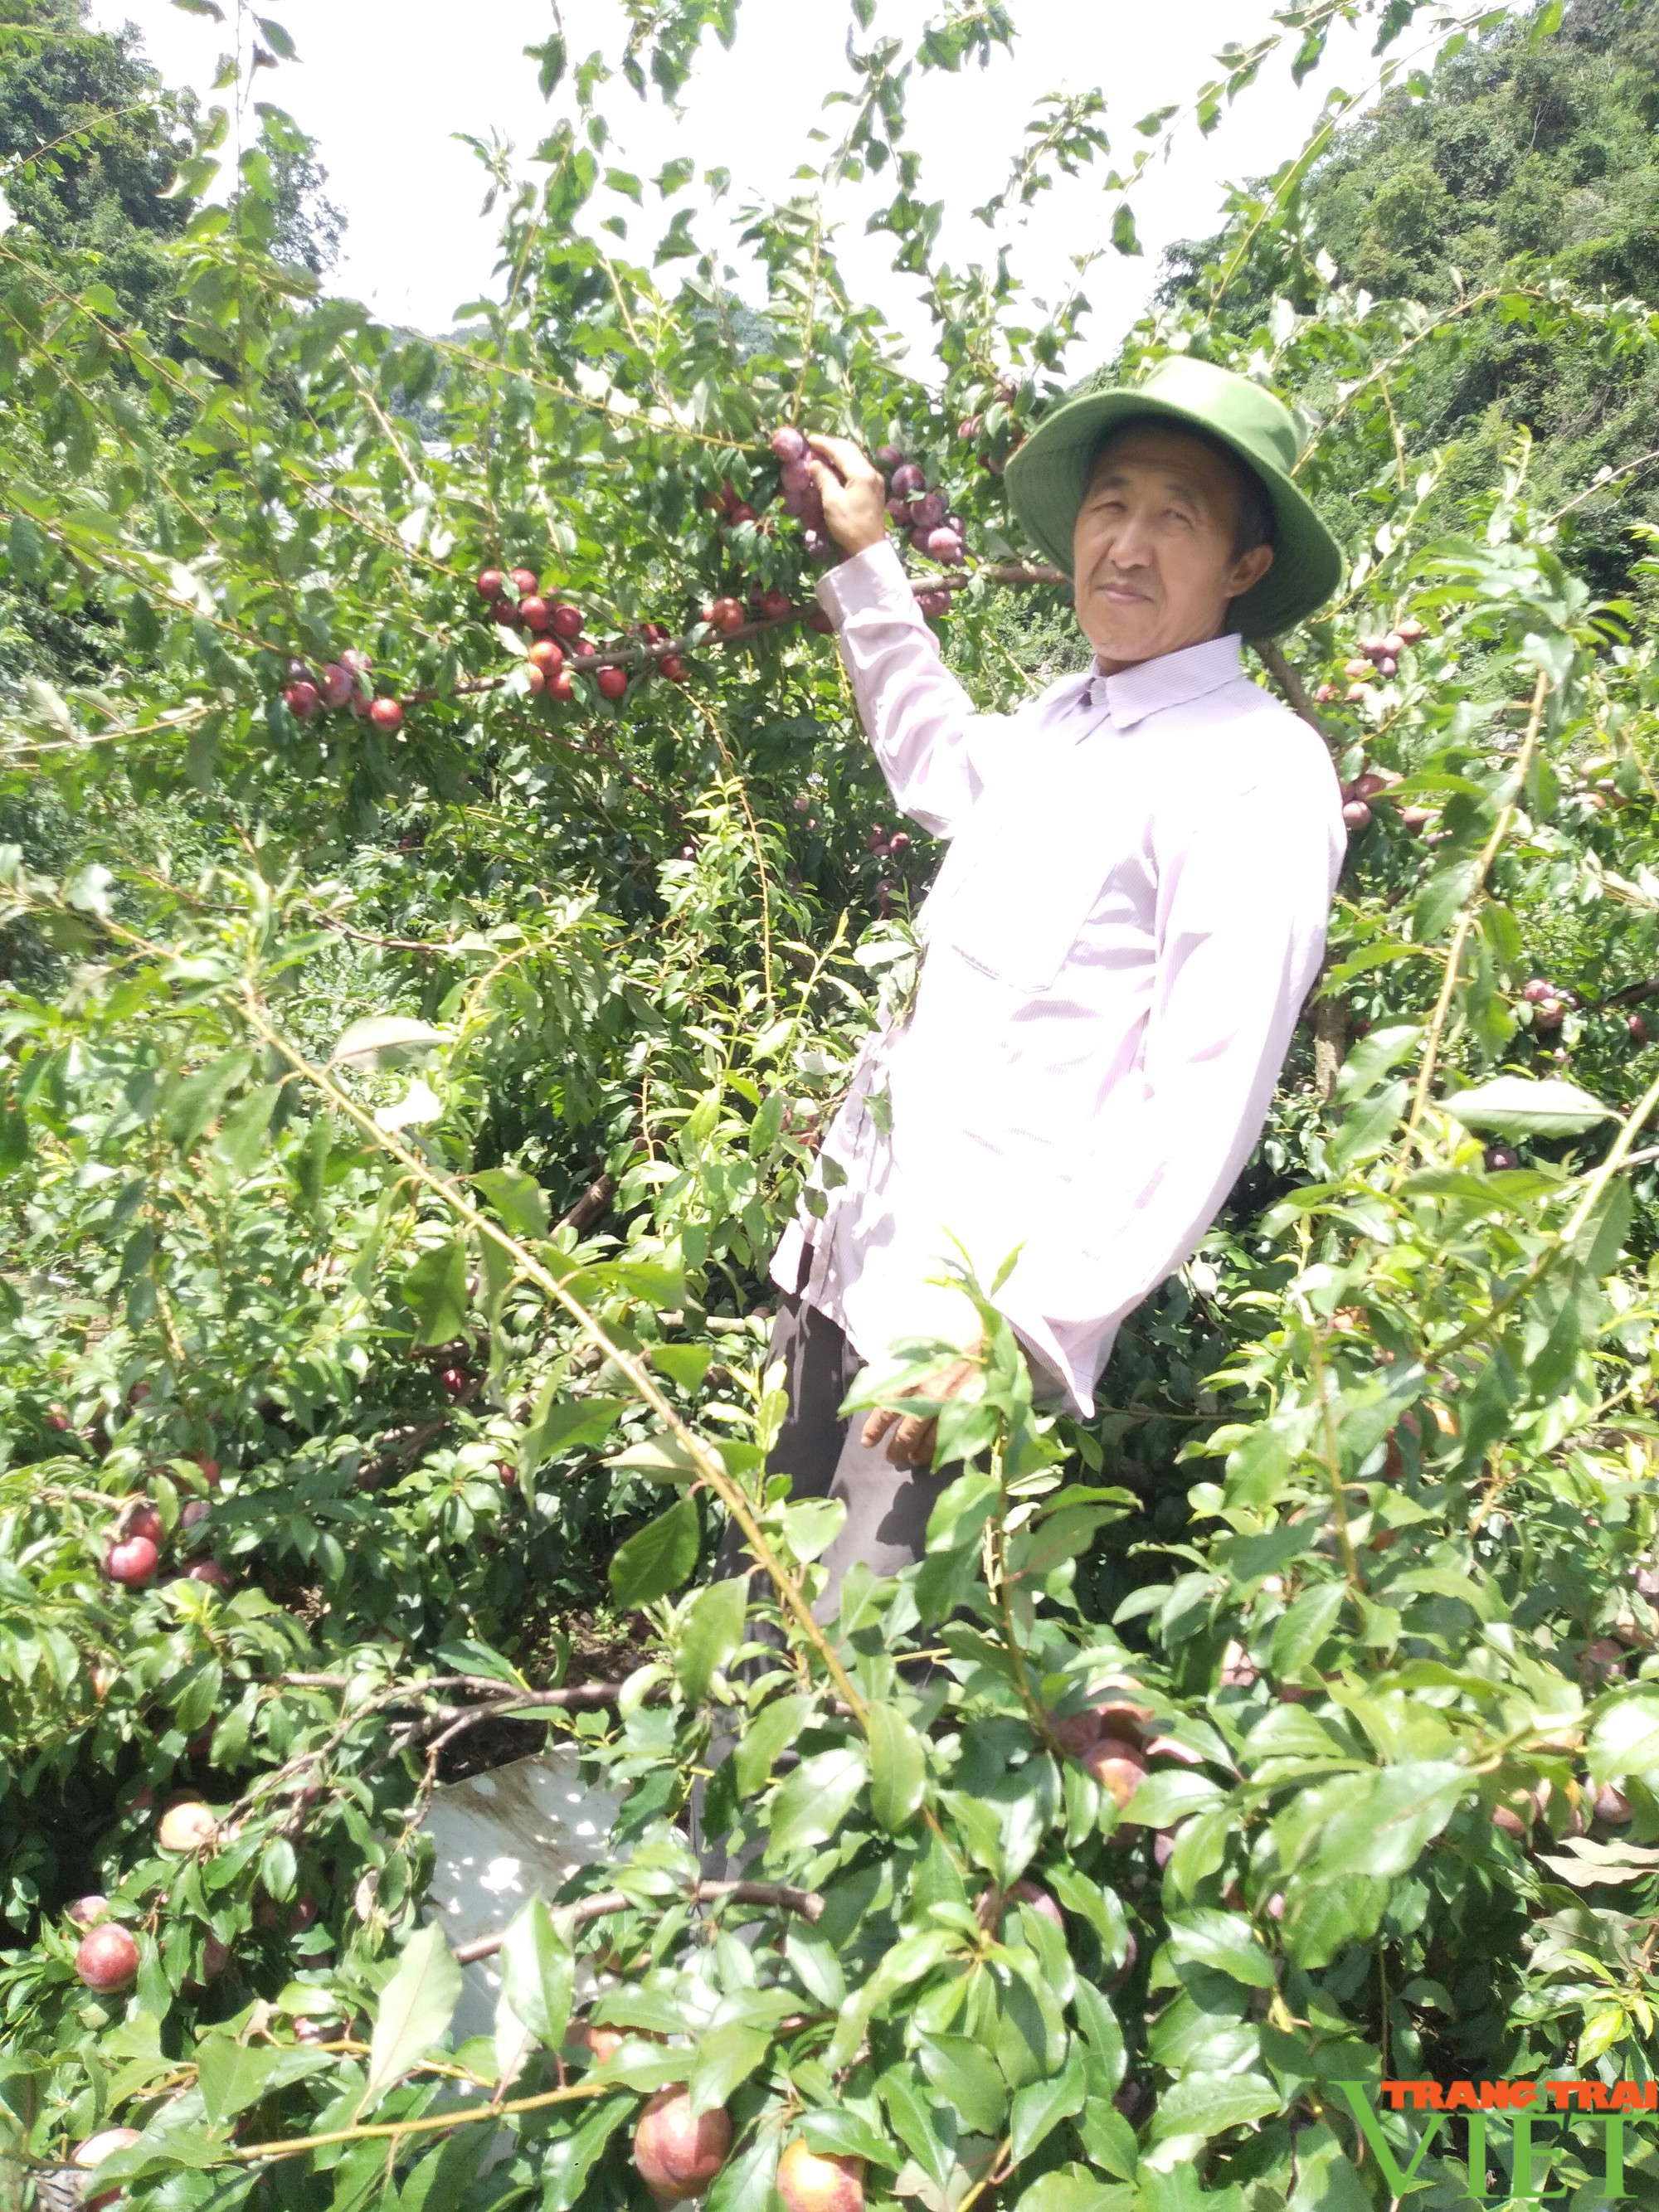 Chi Hội trưởng Chi Hội Nông dân ở Sơn La lãi hơn 1 tỷ/năm nhờ trồng cây ăn quả - Ảnh 5.